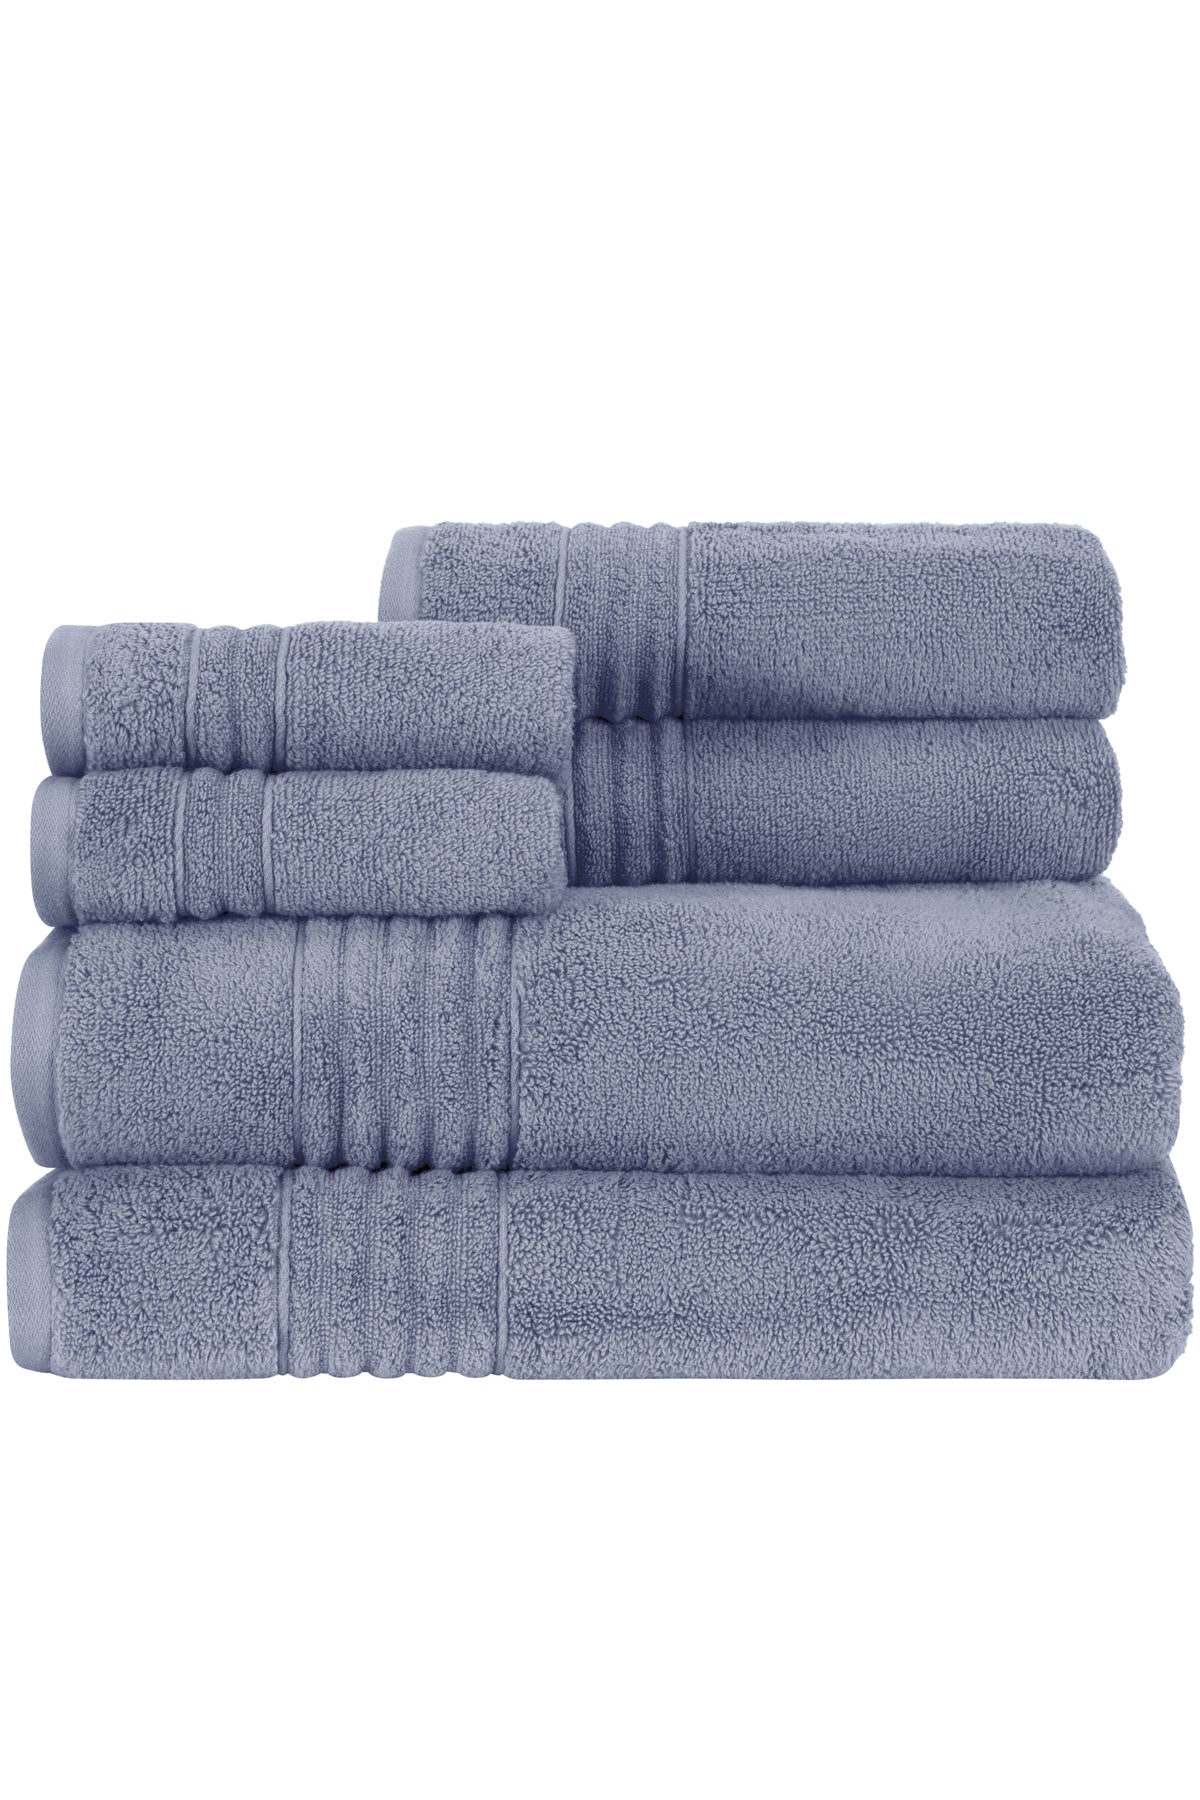 Caro Home Emma Ivory Linen 6 Pc. Towel Set, Bath Towels, Household